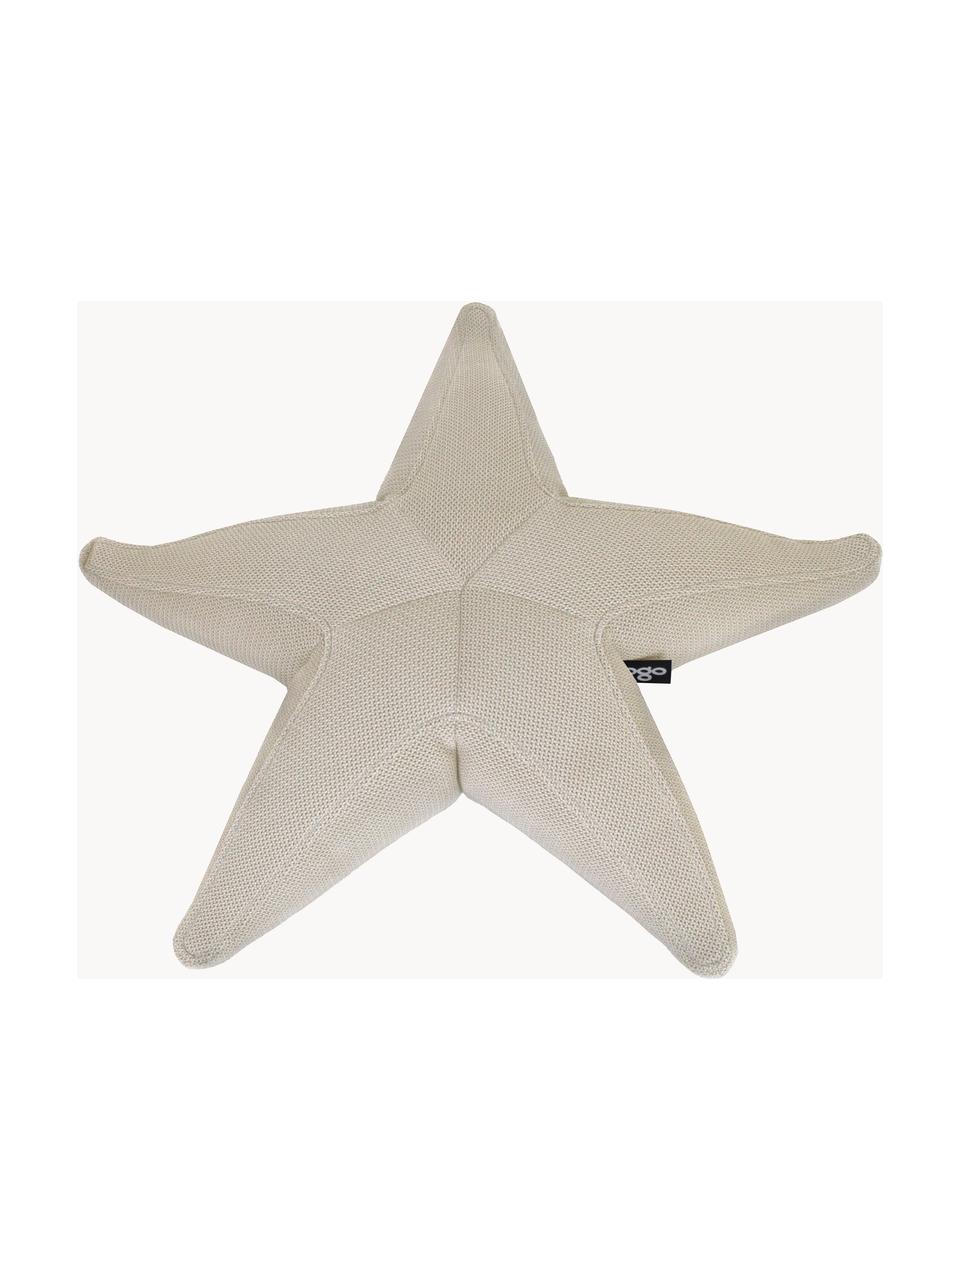 Pouf sacco piccolo da esterno fatto a mano Starfish, Rivestimento: 70% PAN + 30% PES, imperm, Beige chiaro, Larg. 83 x Lung. 83 cm